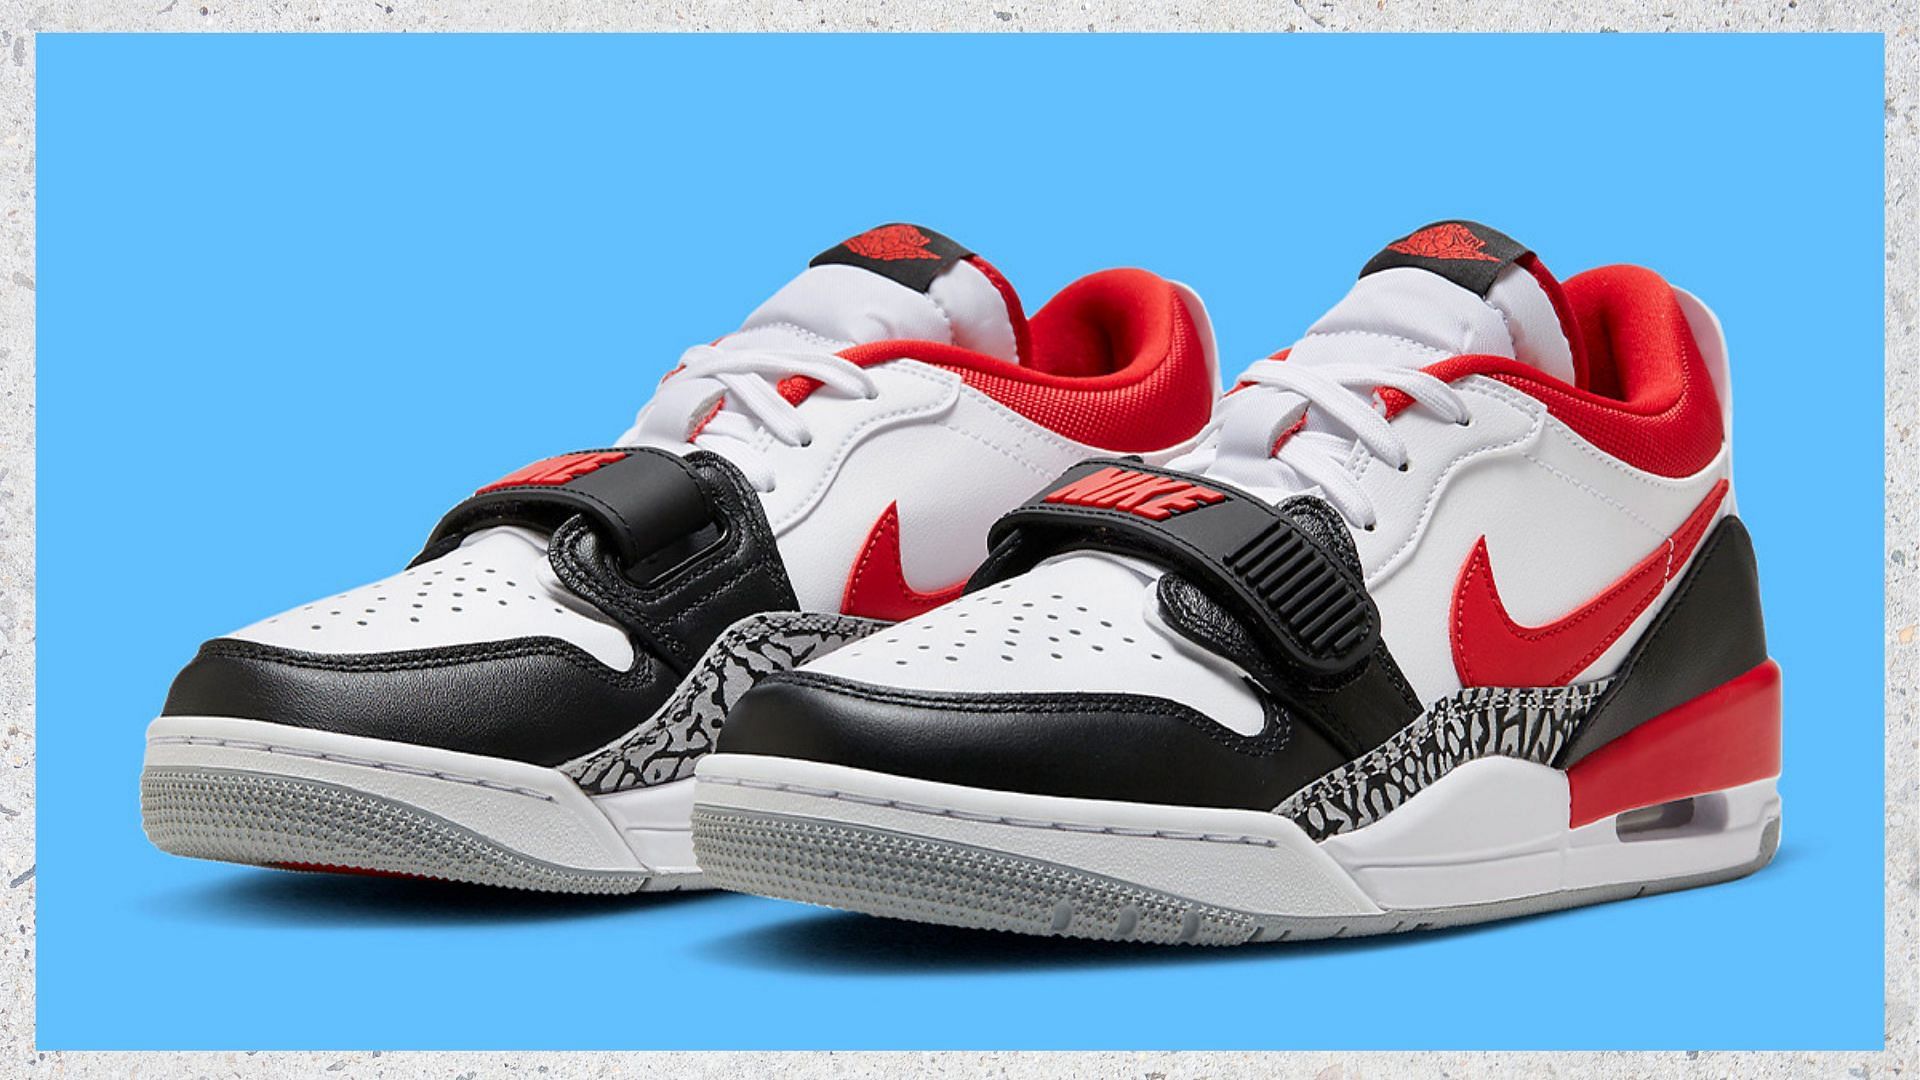 Jordan Legacy 312 Low Black Toe shoes (Image via Nike)